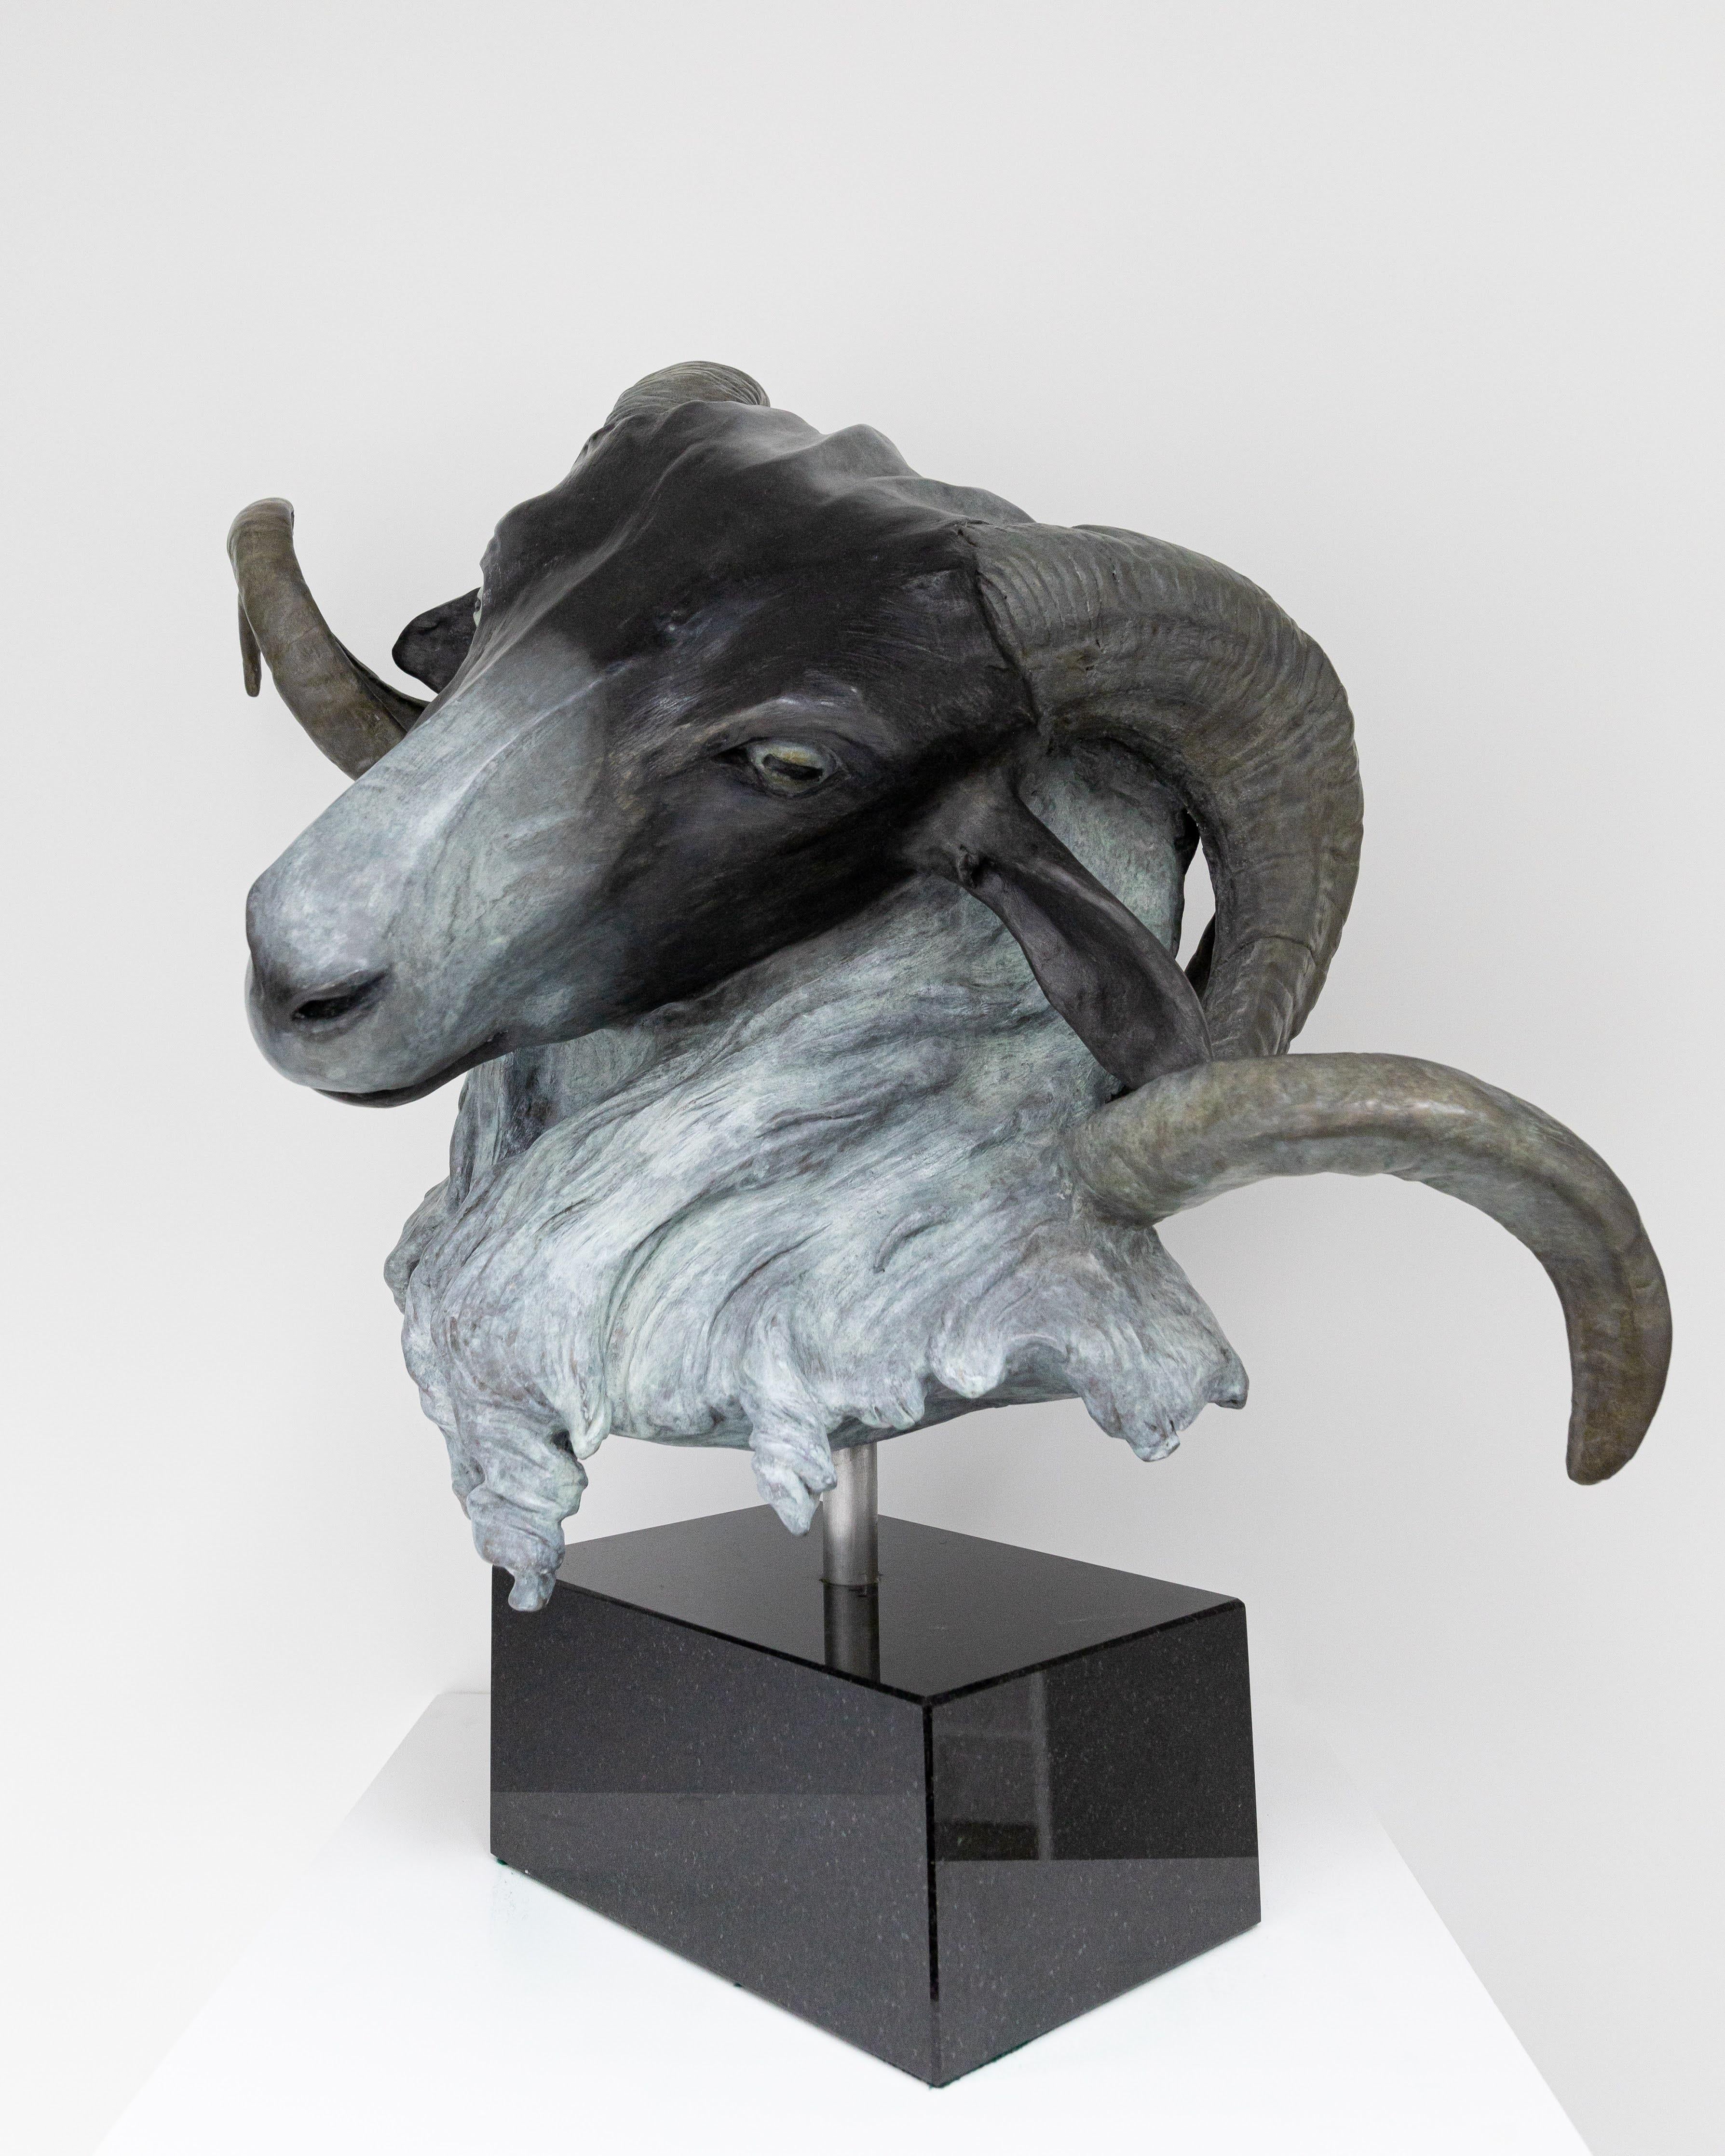 Rams écossais à facettes noires (Ovis Aries) - Sculpture de Barry Davies